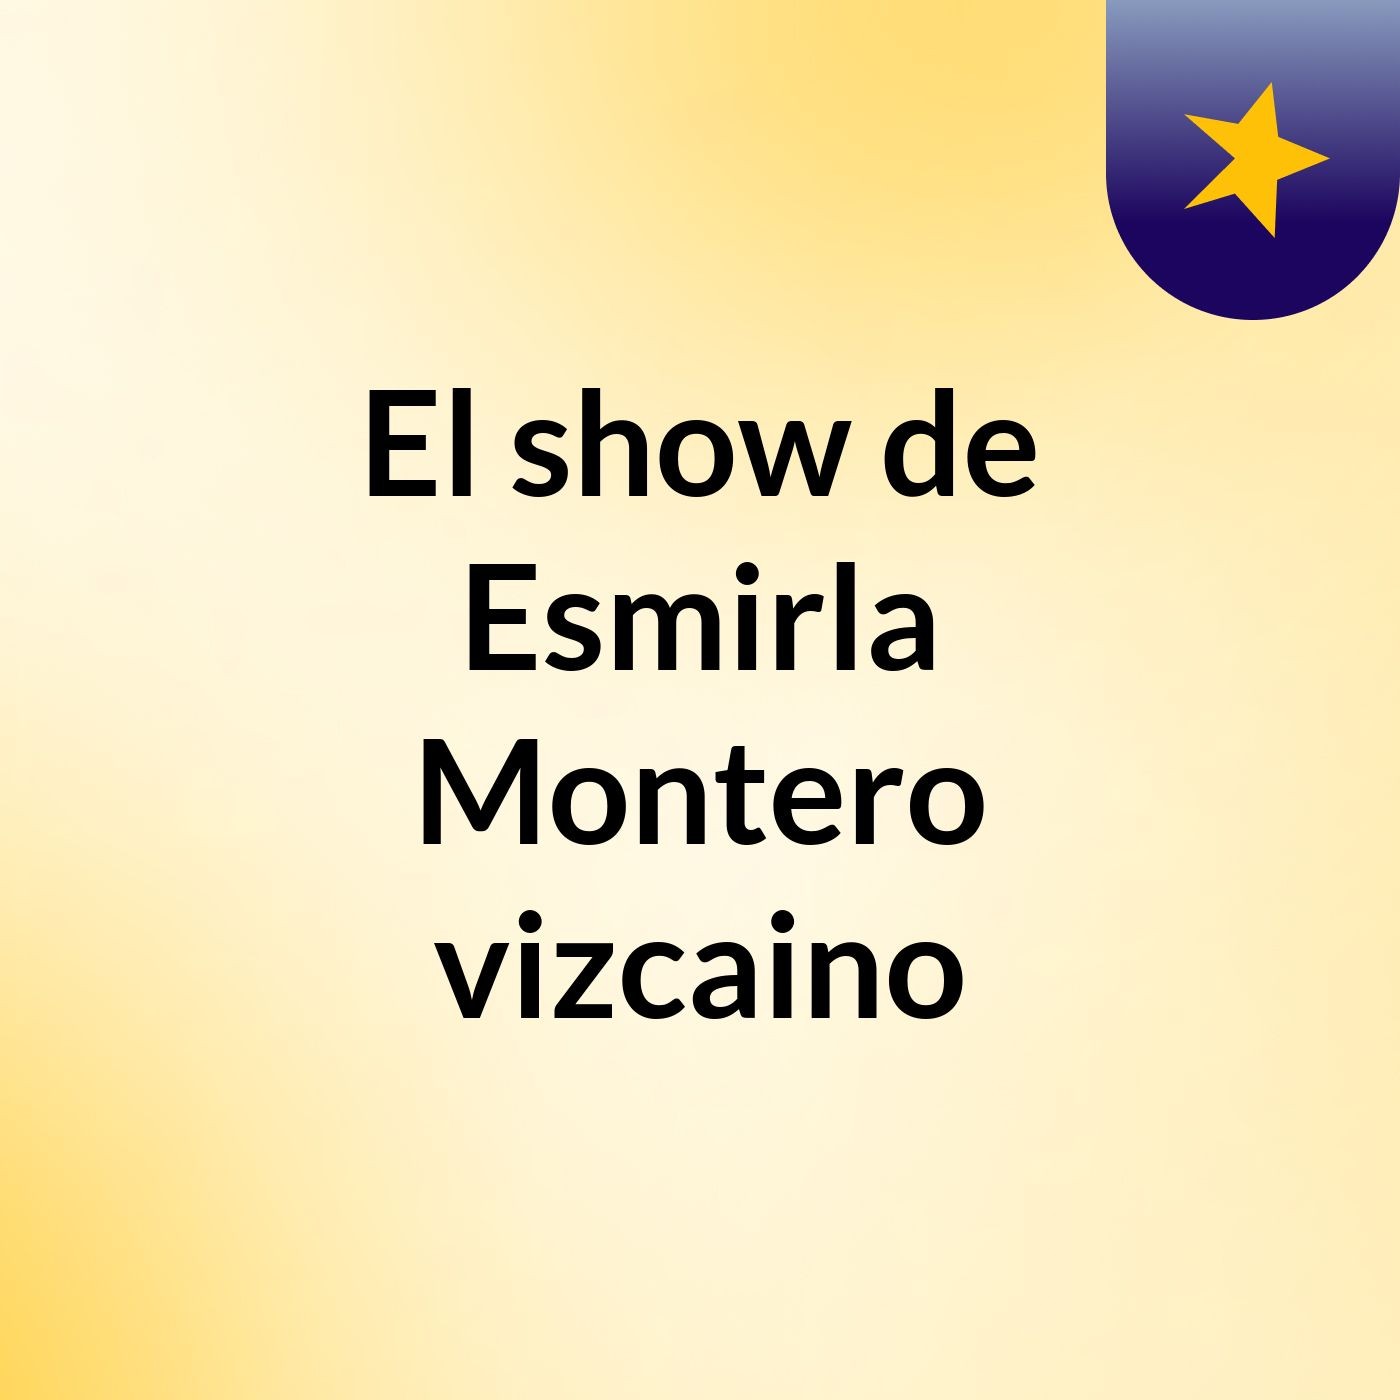 El show de Esmirla Montero vizcaino